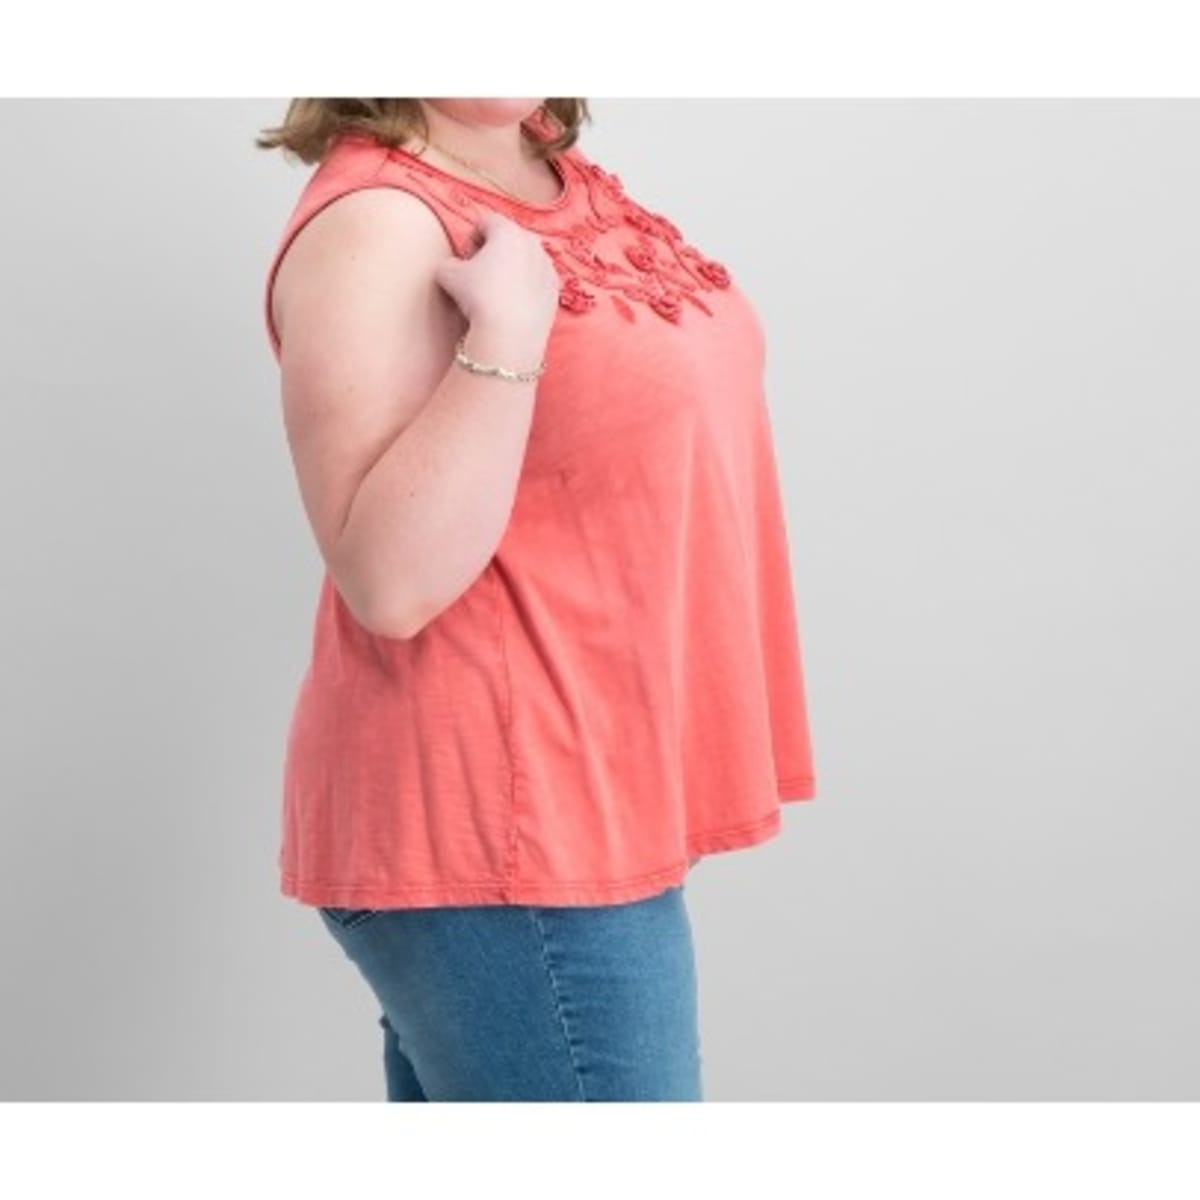 Women's Plus Size Cotton Tank Top